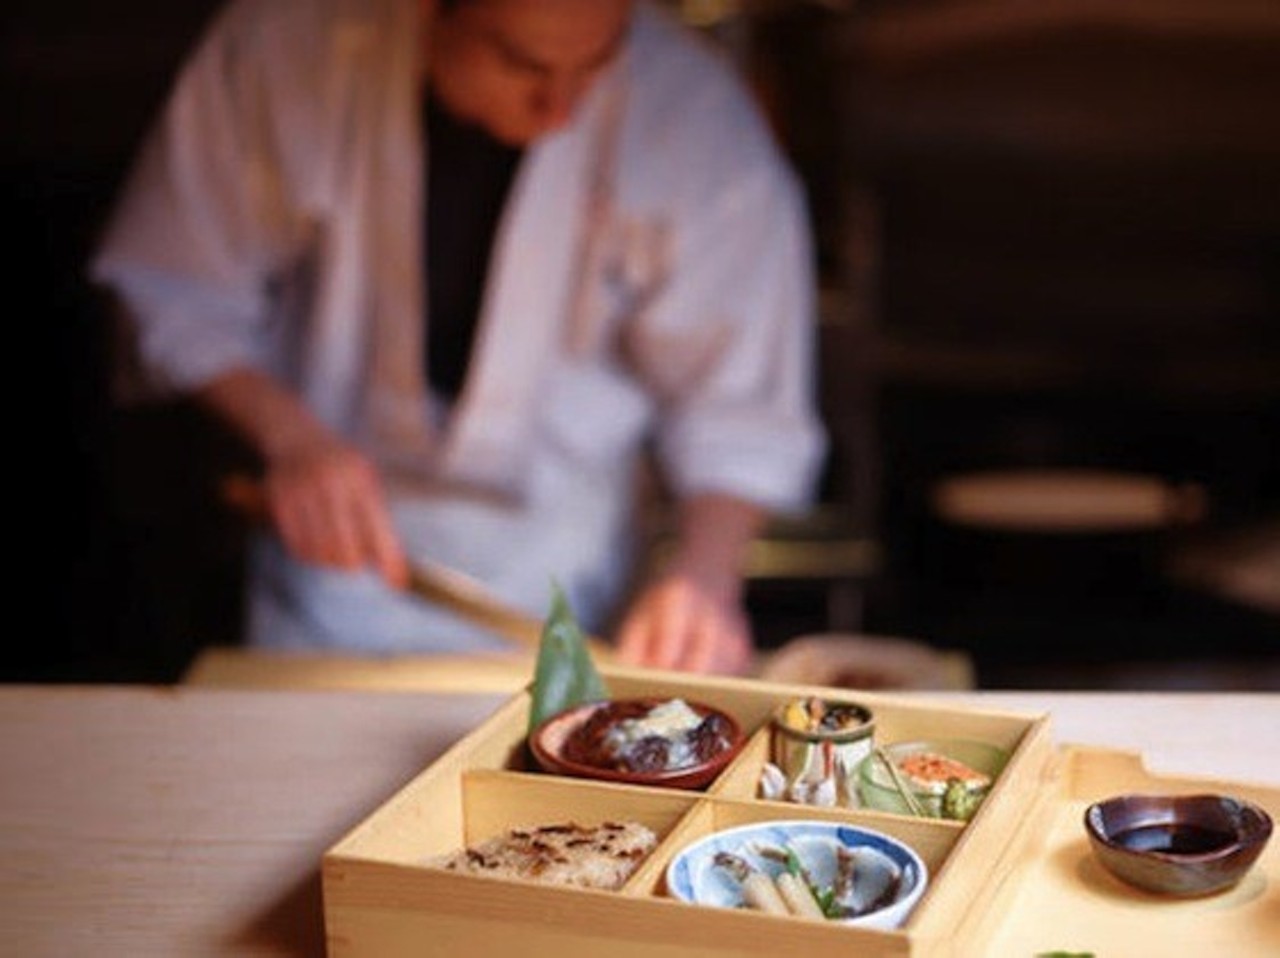 NAOE Miami, Florida Bữa ăn Sushi Tín dụng hình ảnh: NAOE/Facebook (Ảnh của Jeffery Salter) Nằm trong danh sách 40 nhà hàng hàng đầu ở Mỹ năm 2019, NAOE Miami cũng đã được tạp chí Forbes Travel Guide trao tặng 5 sao . Chuyên về ẩm thực tự nhiên của Nhật Bản tại NAOE, đầu bếp Kevin Cory tạo ra thực đơn Chef's Choice đặc biệt có giá 280 USD/người (khoảng 23.000 INR) chưa bao gồm thuế. Các yêu cầu đặc biệt cần được thực hiện trước ít nhất 10 ngày vì bữa ăn được nấu tươi mỗi ngày.